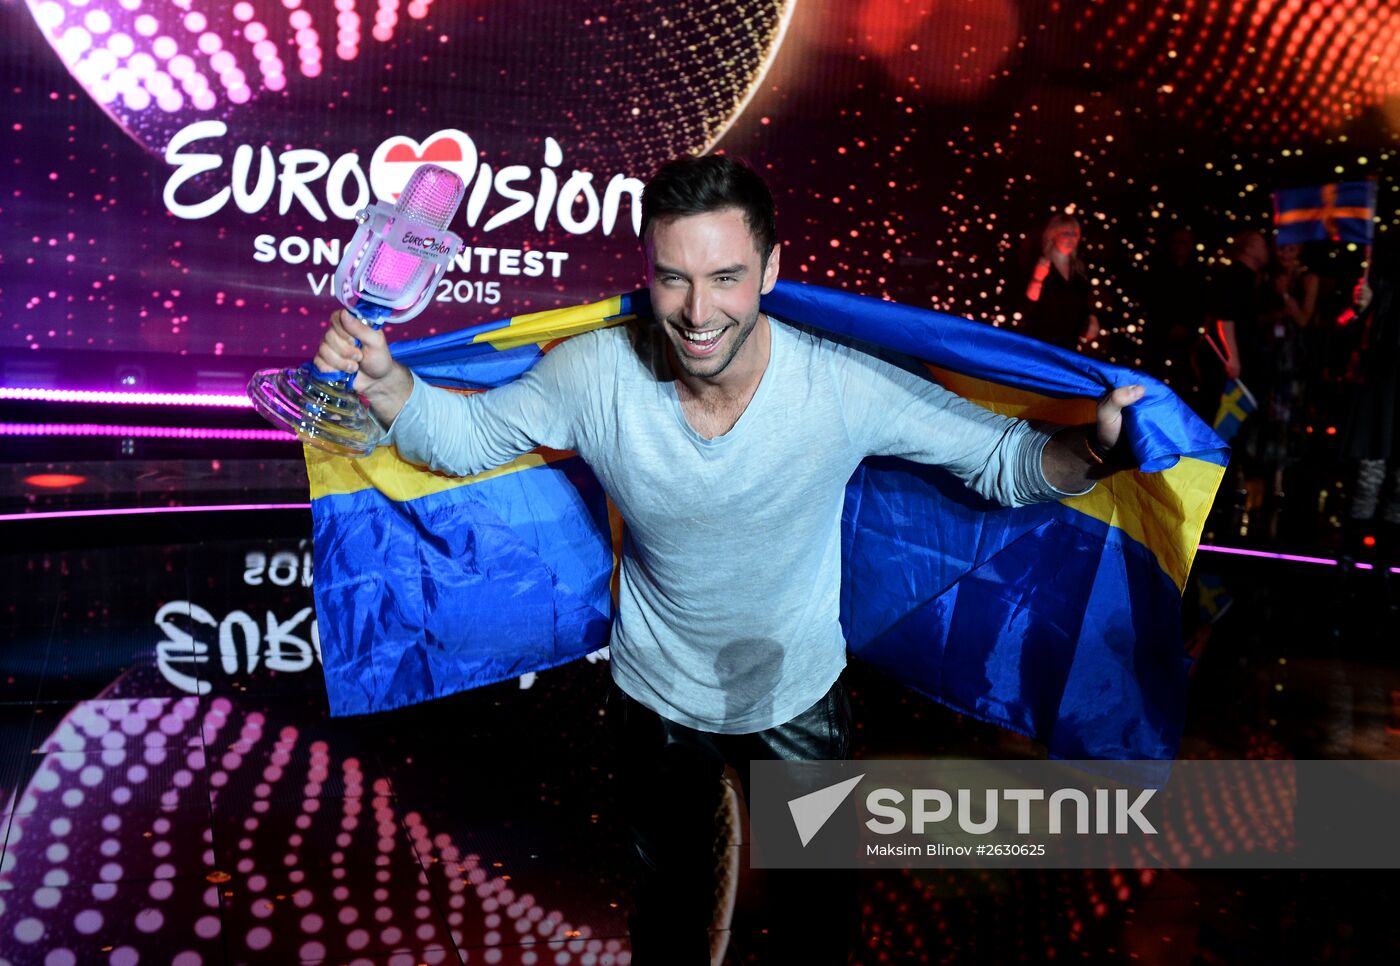 Eurovison Song Contest final in Vienna